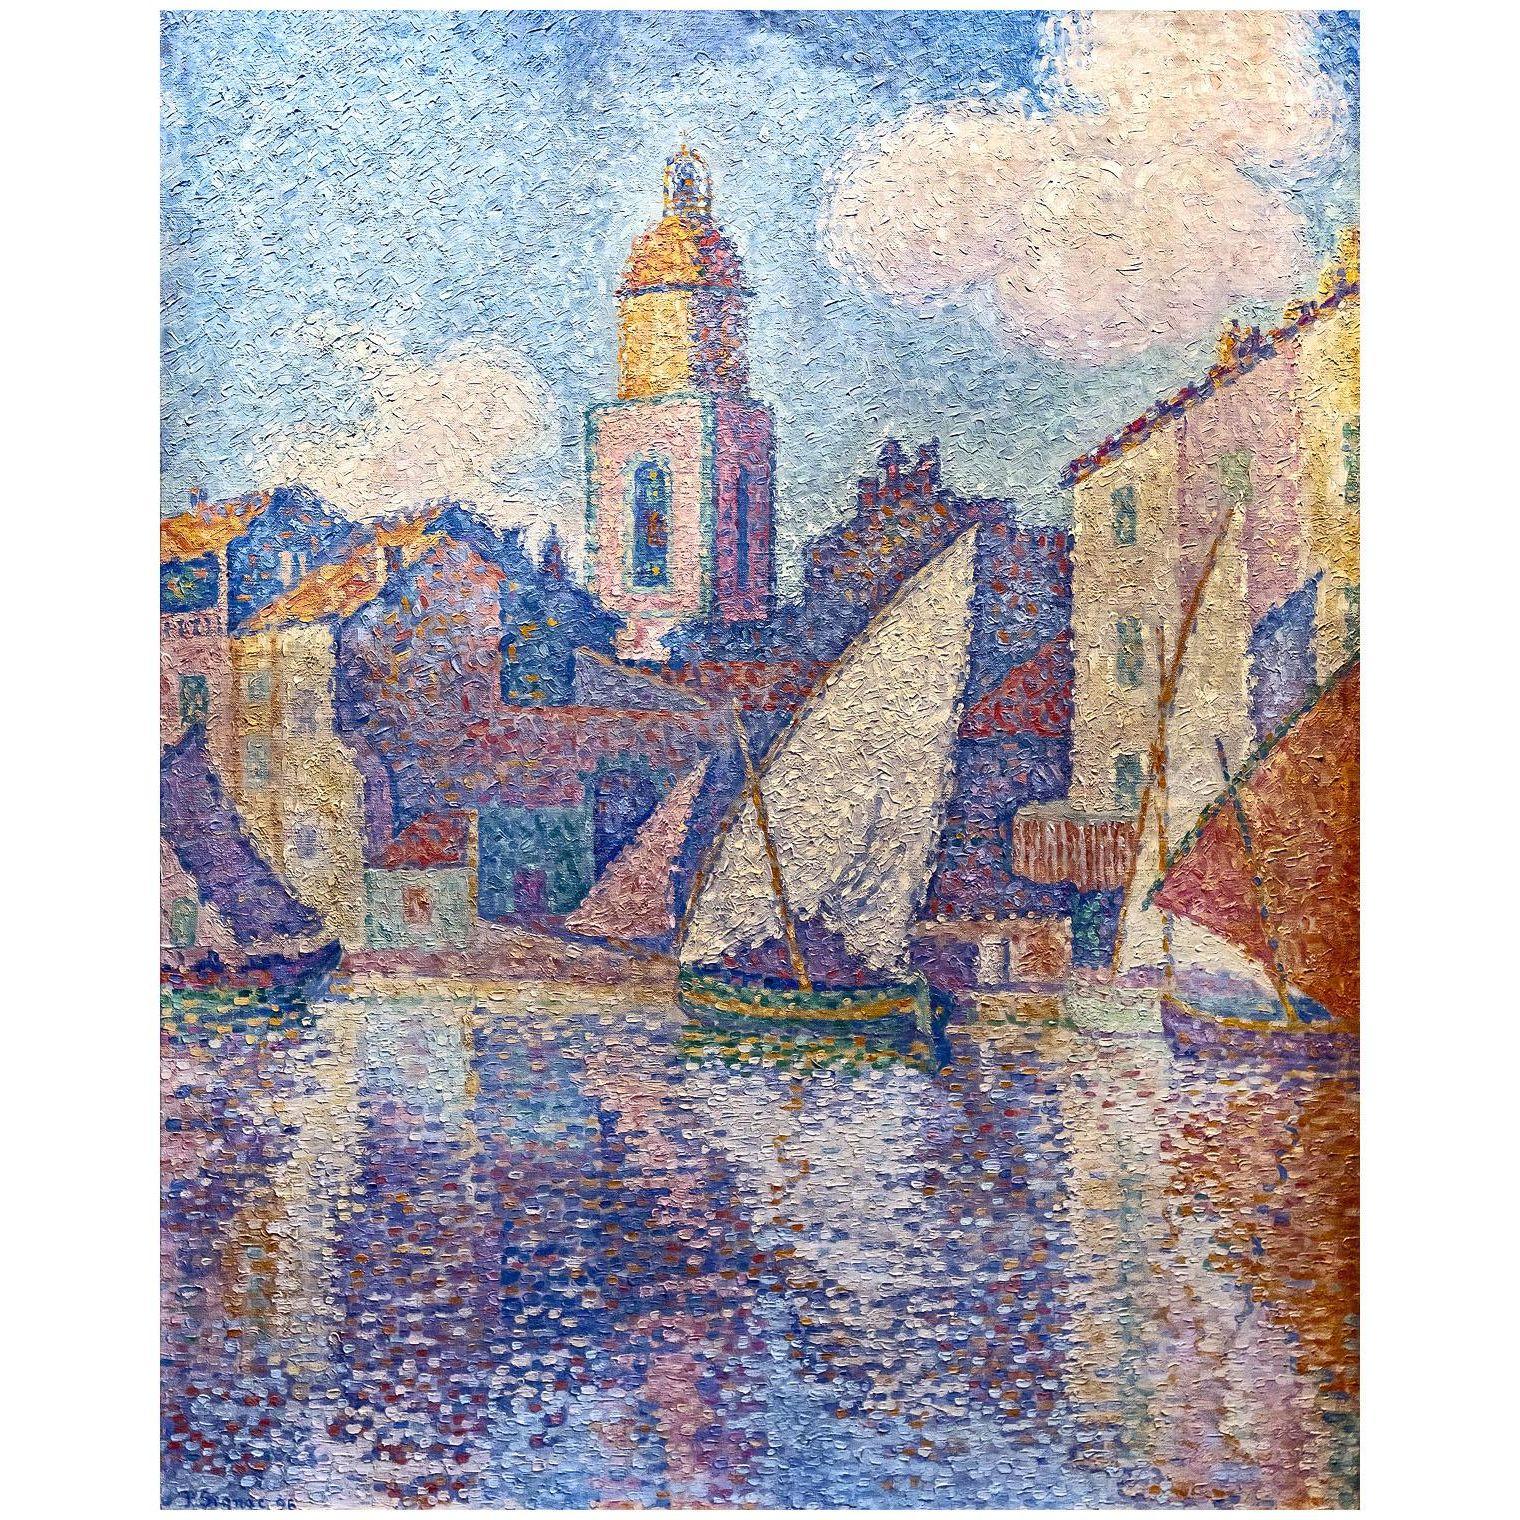 Paul Signac. Le clocher de Saint-Tropez. 1896. Foundation Bemberg Toulouse